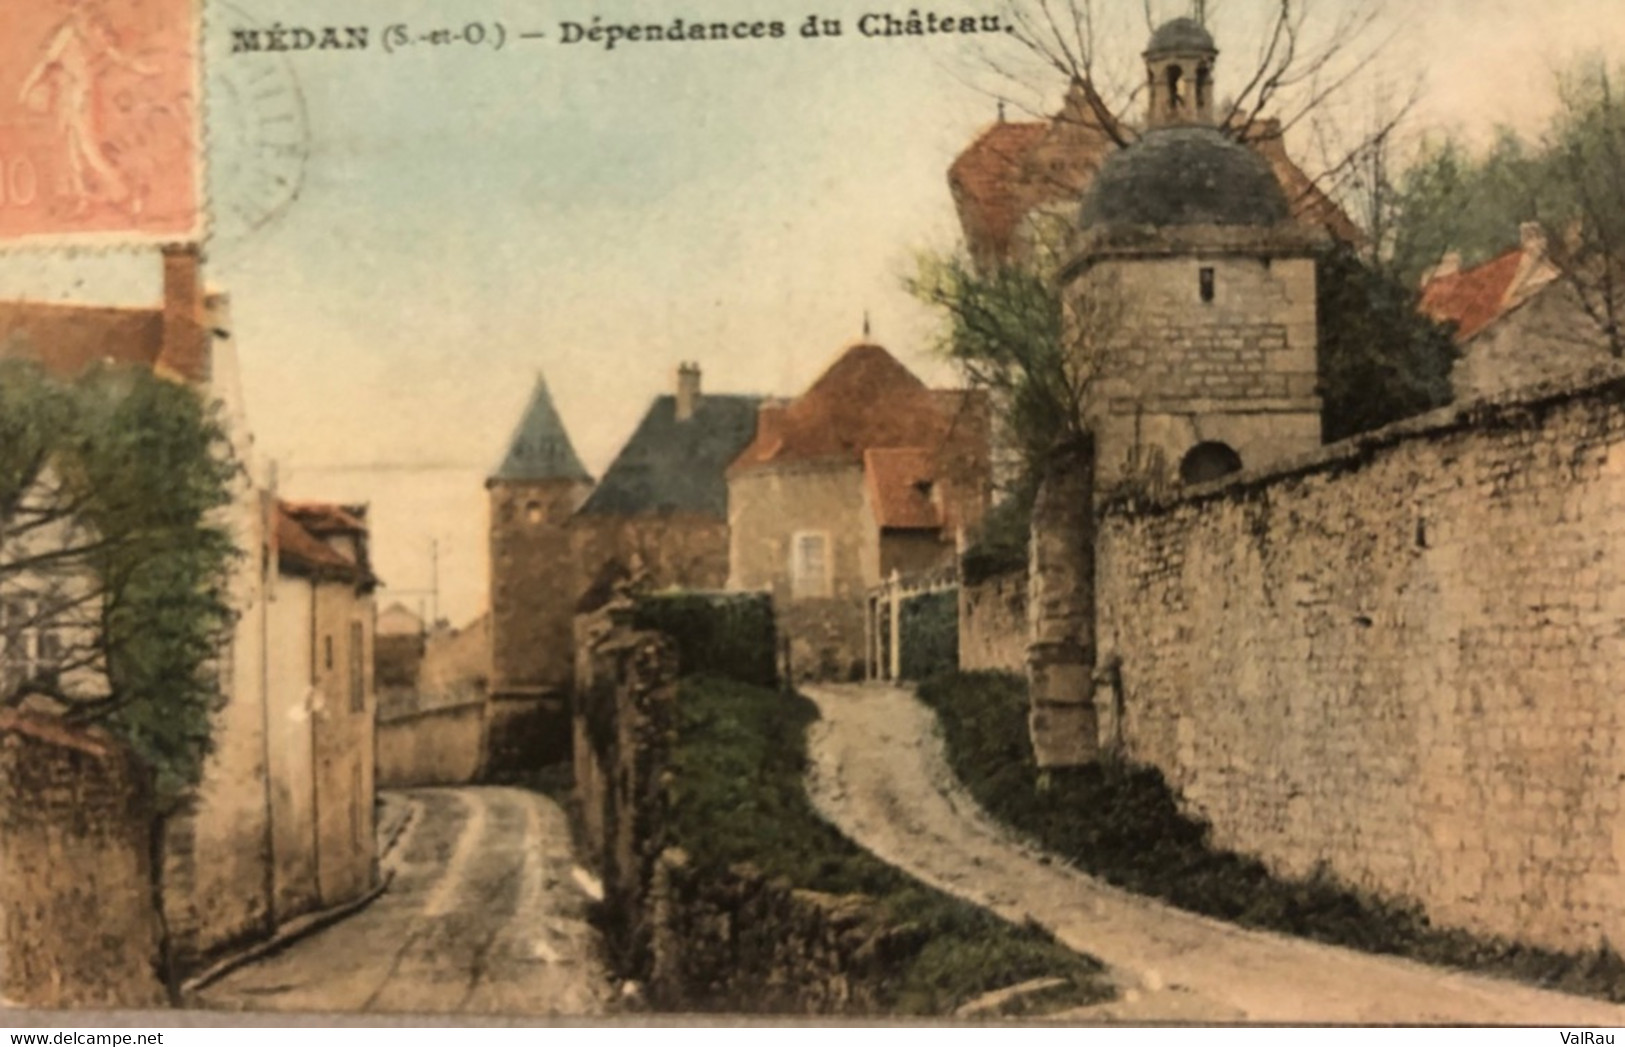 Médan - Dépendance Du Château - CPA Couleur - Medan